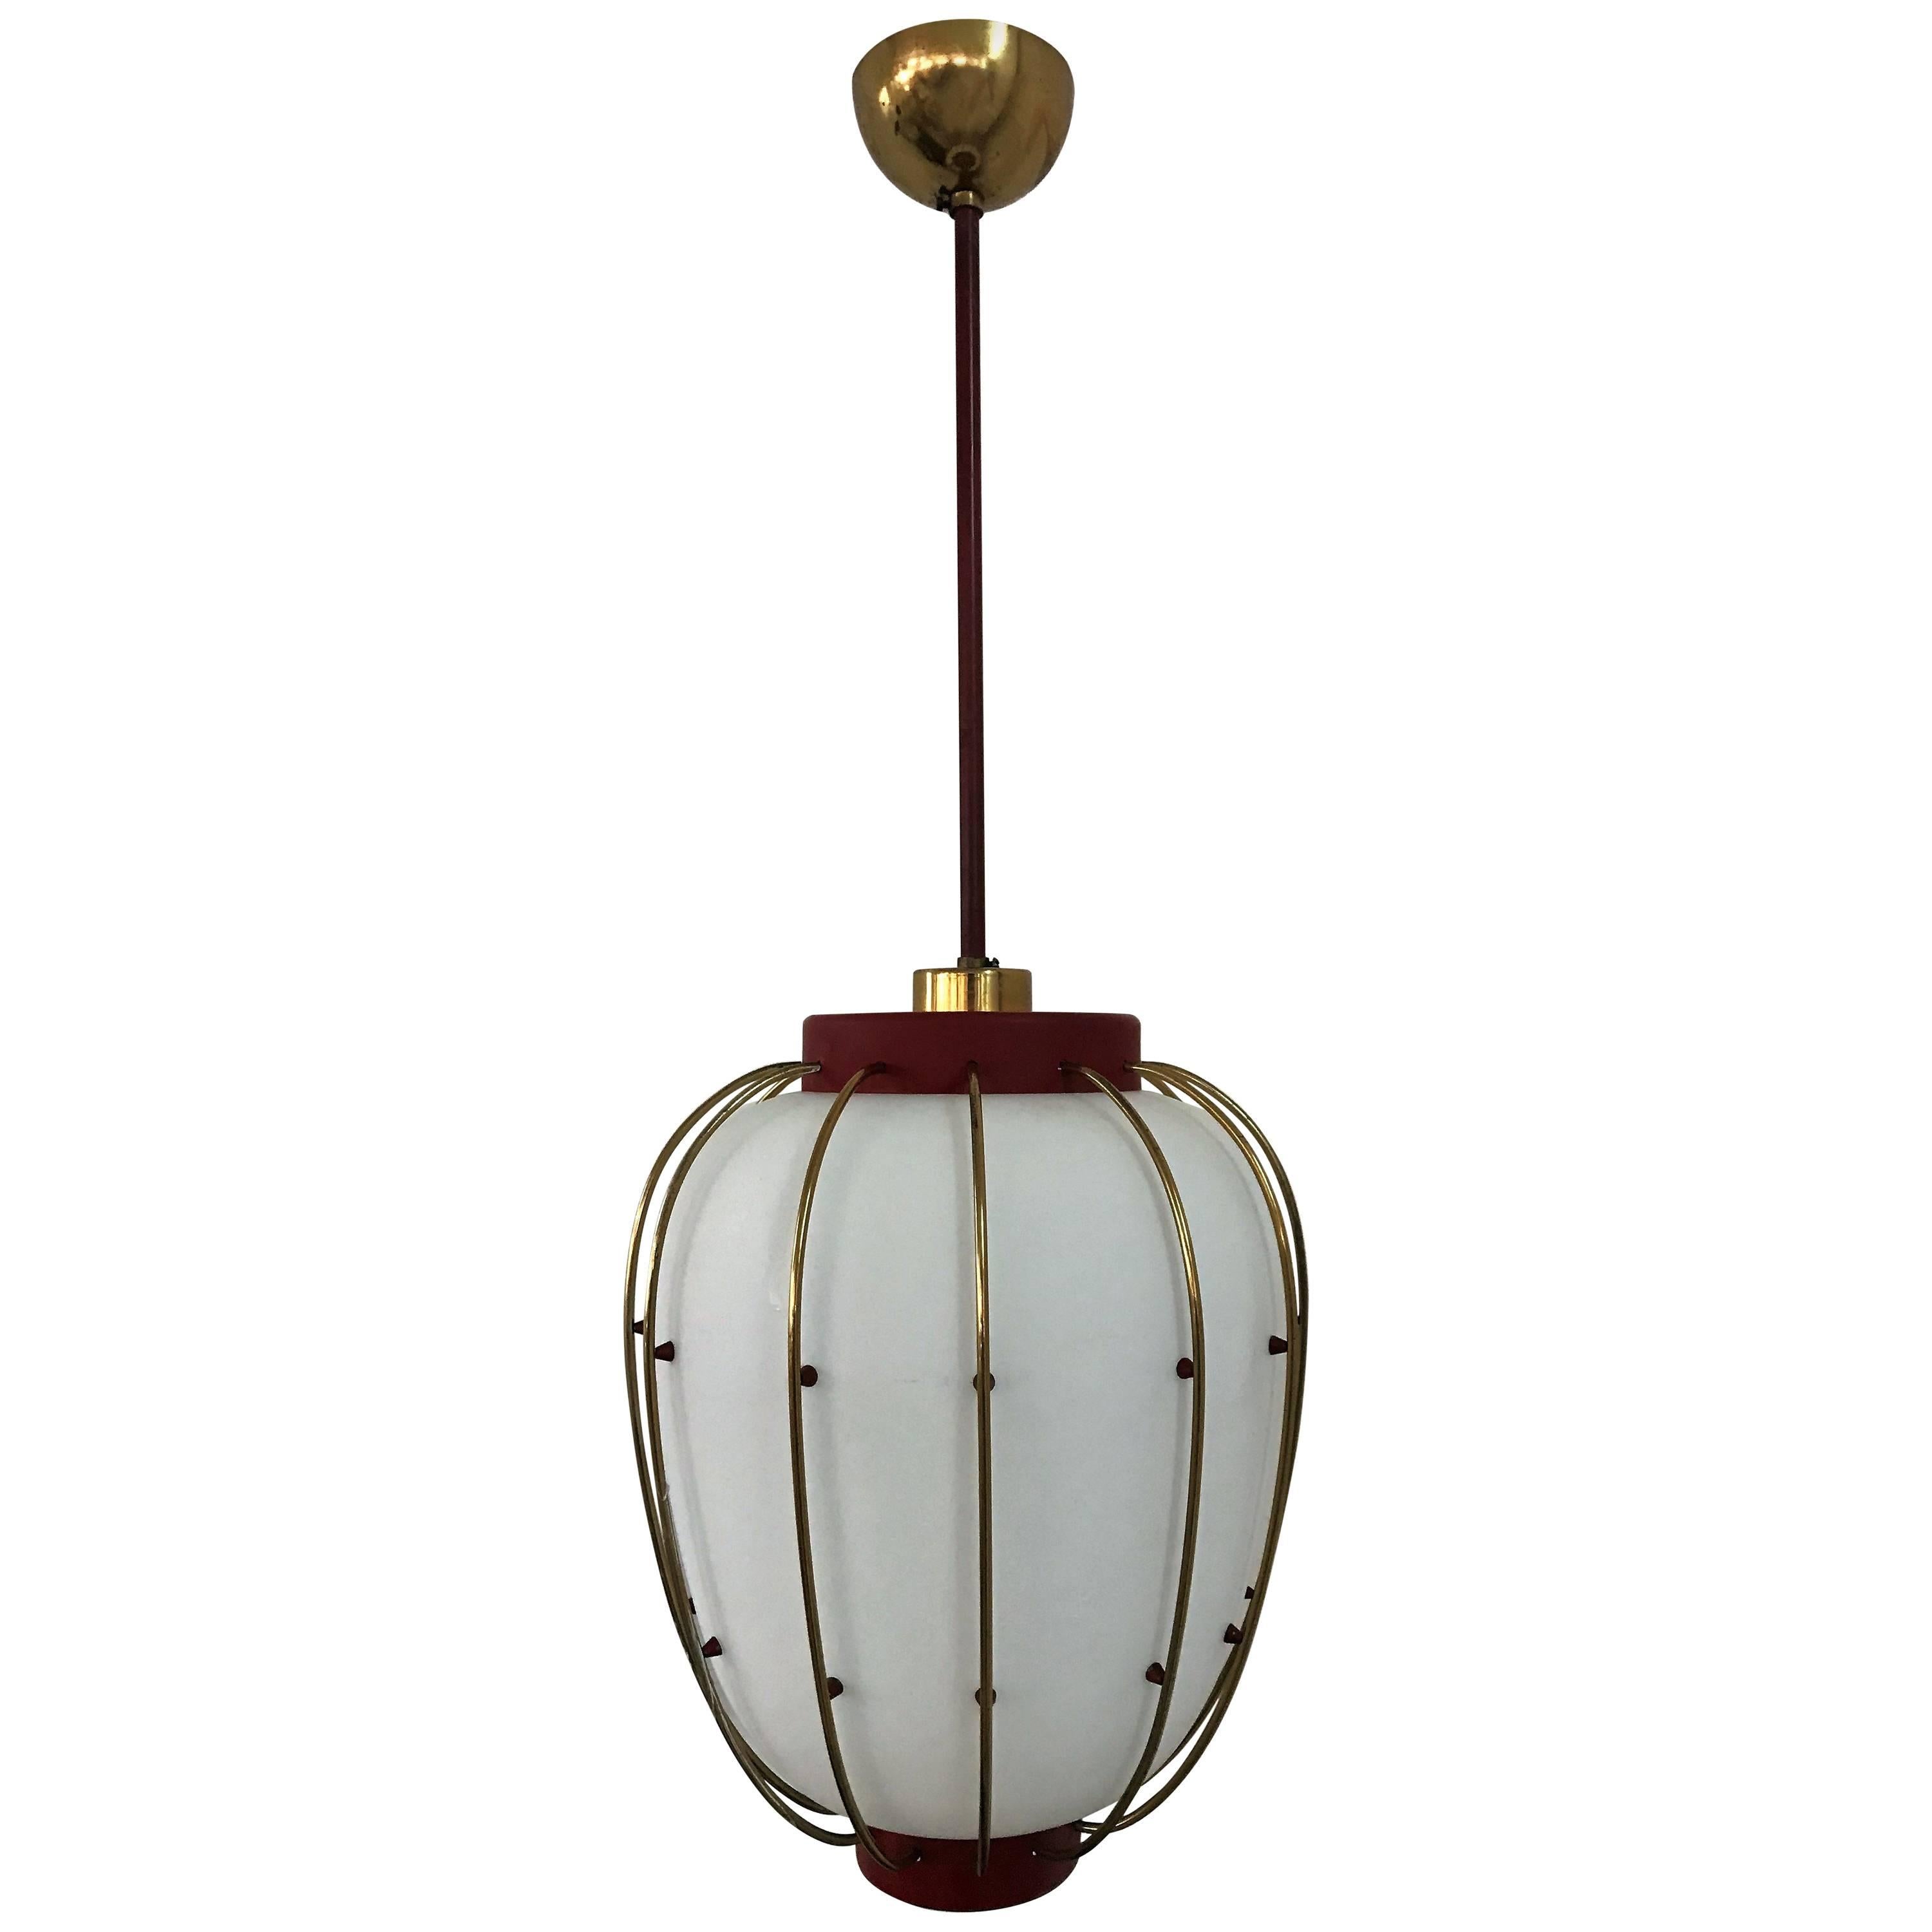 Mid-Century Modern Lantern in Brass and Opaline Glass, 1950, Stilnovo Attributed